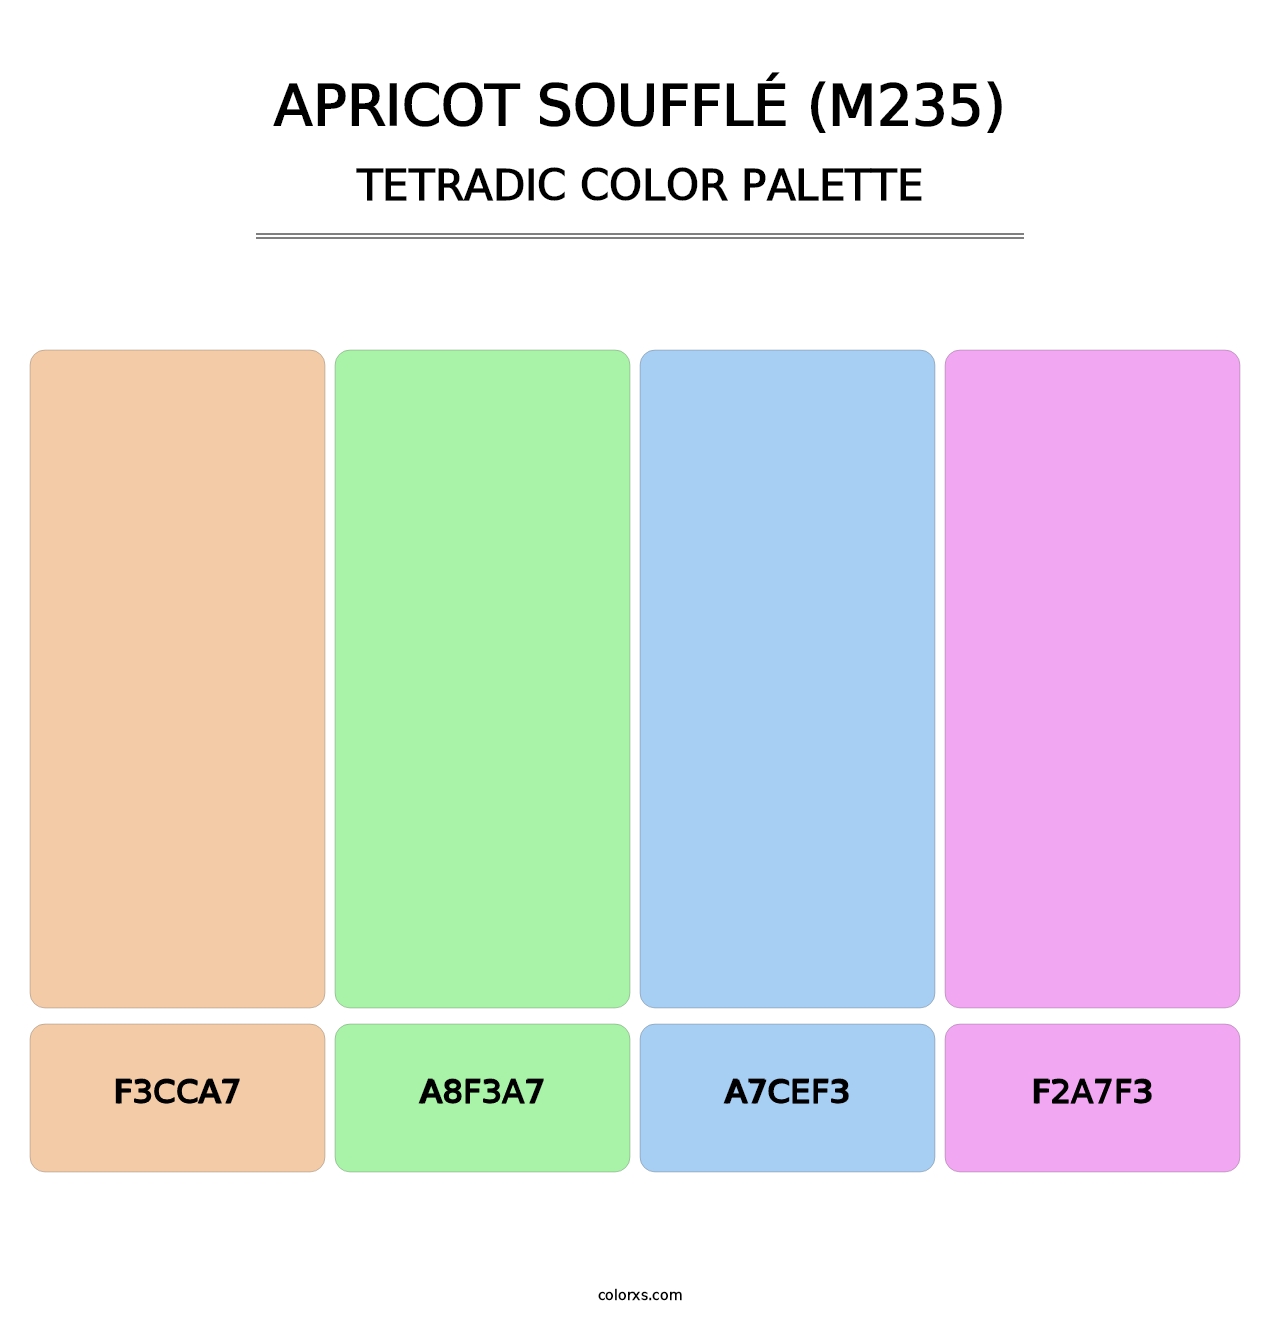 Apricot Soufflé (M235) - Tetradic Color Palette